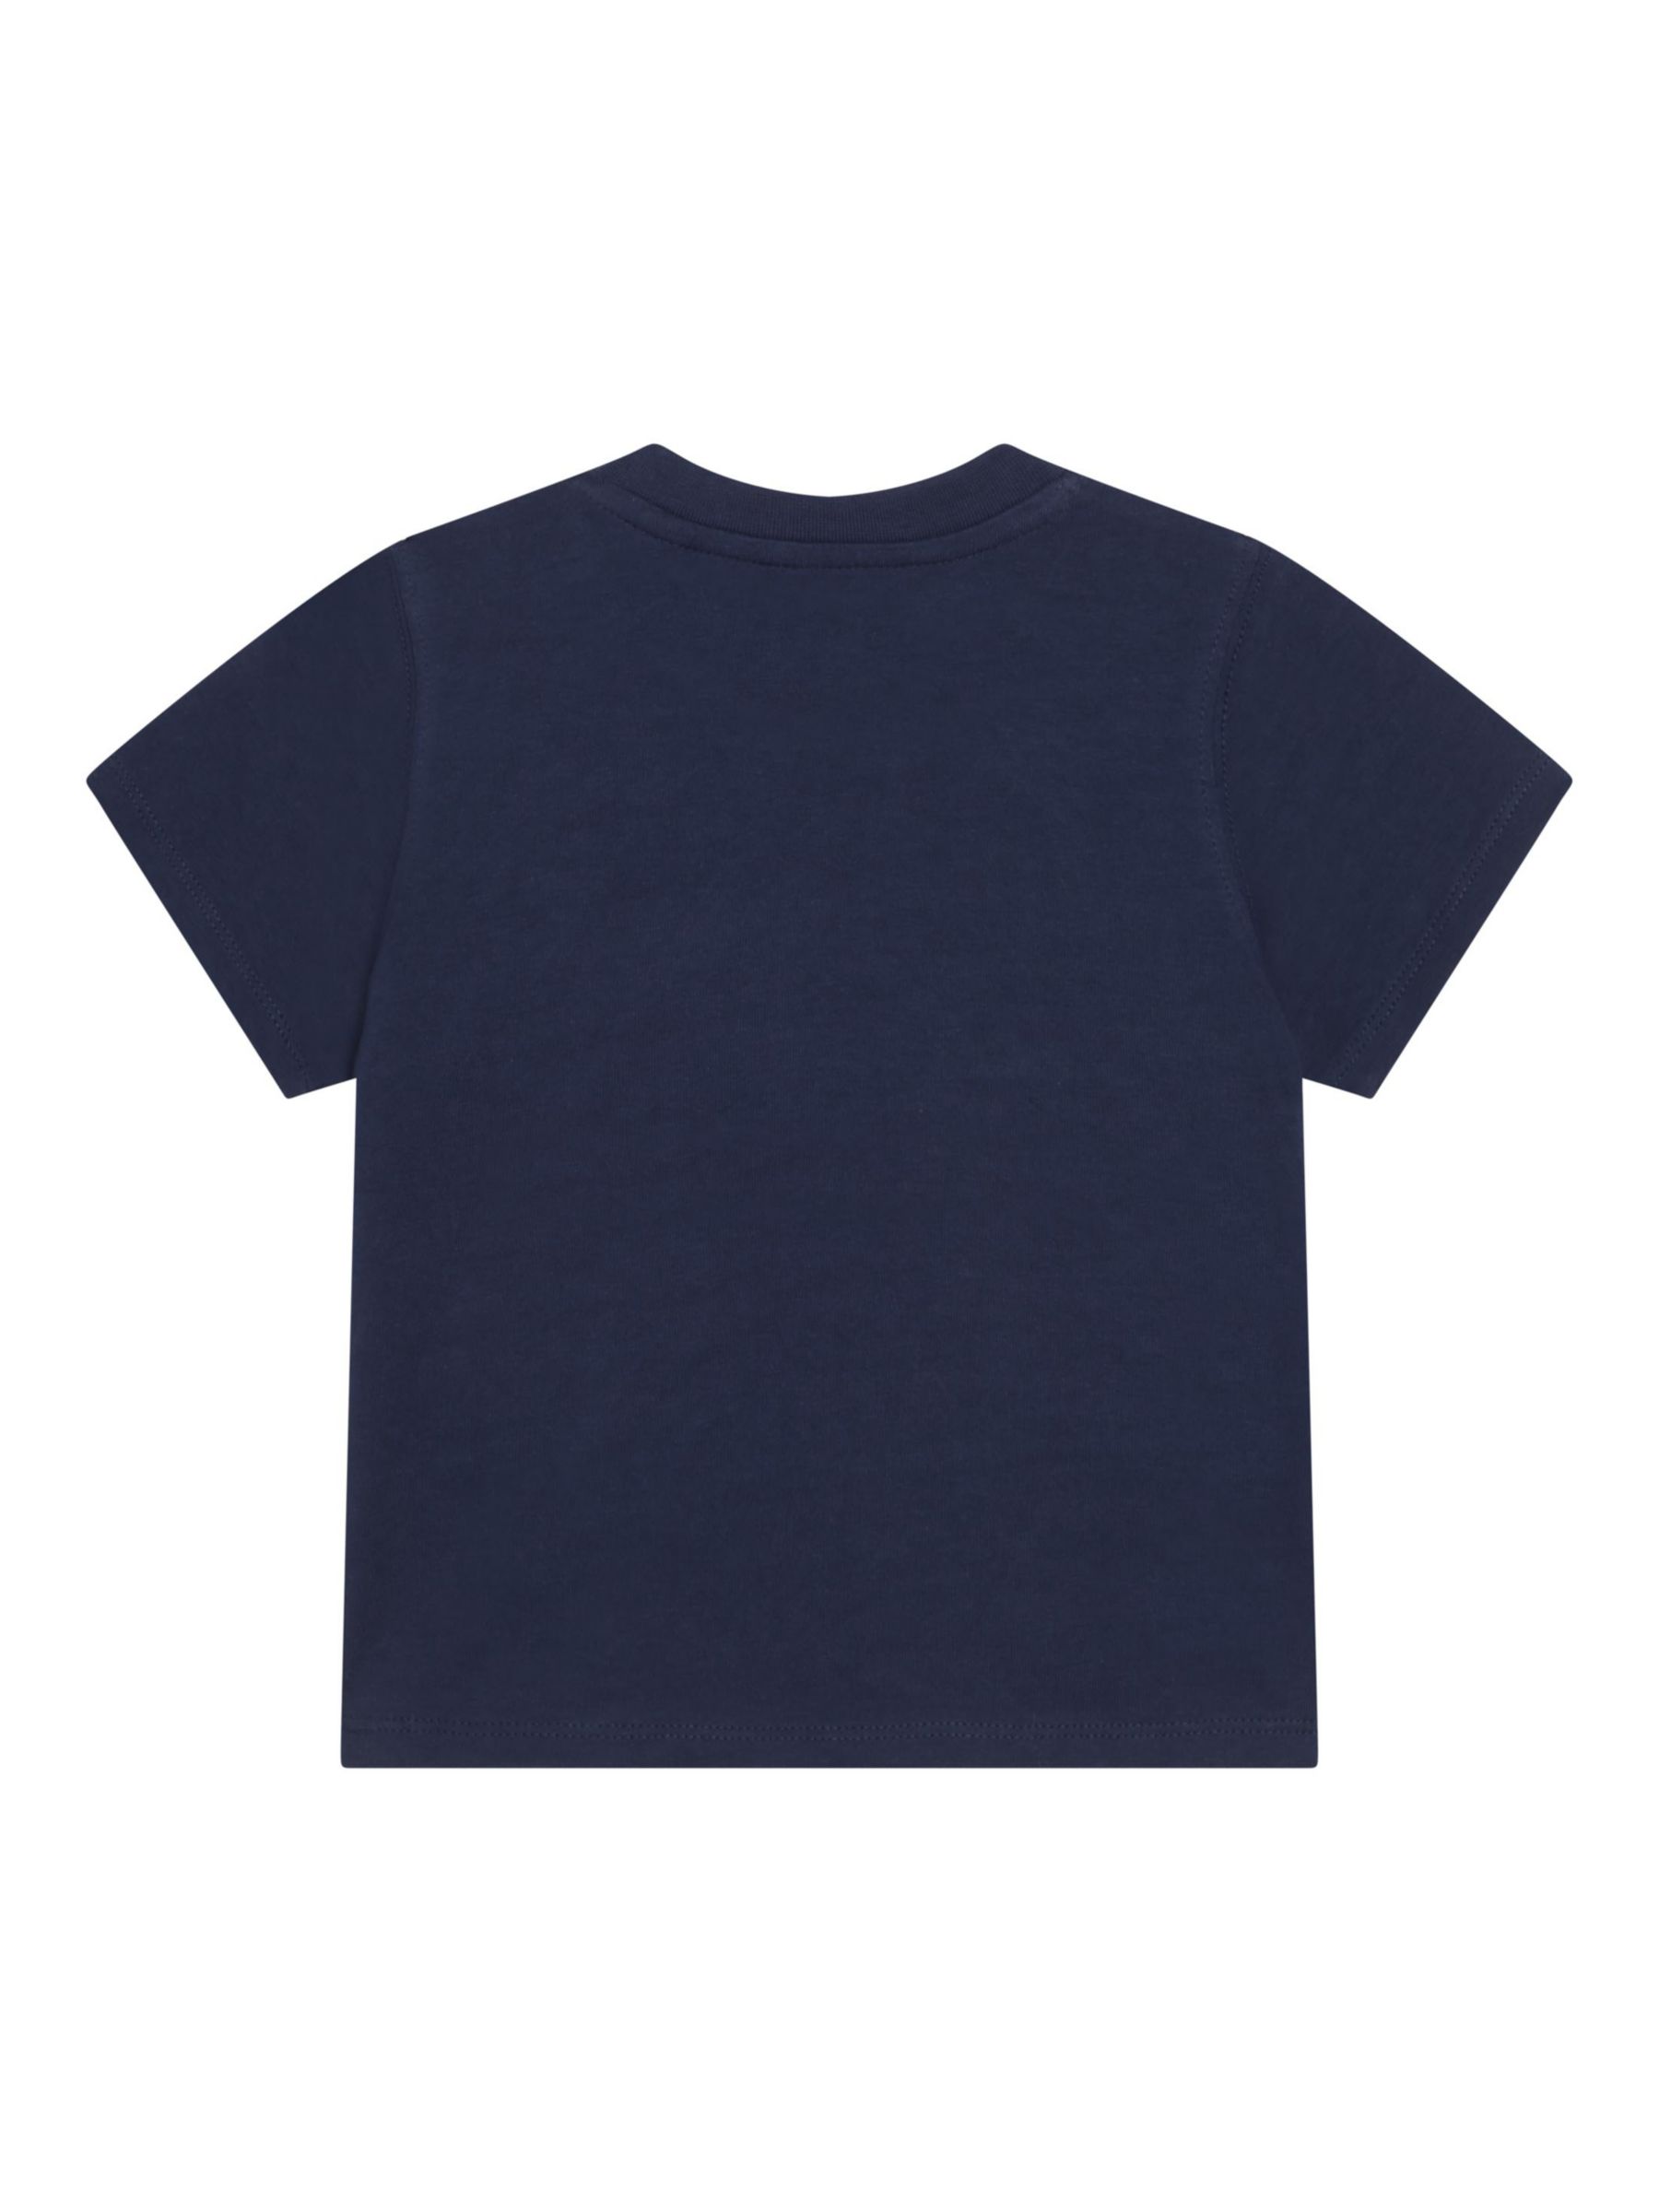 Timberland Kids' Short Sleeved T-Shirt, Navy/Multi, 6 months